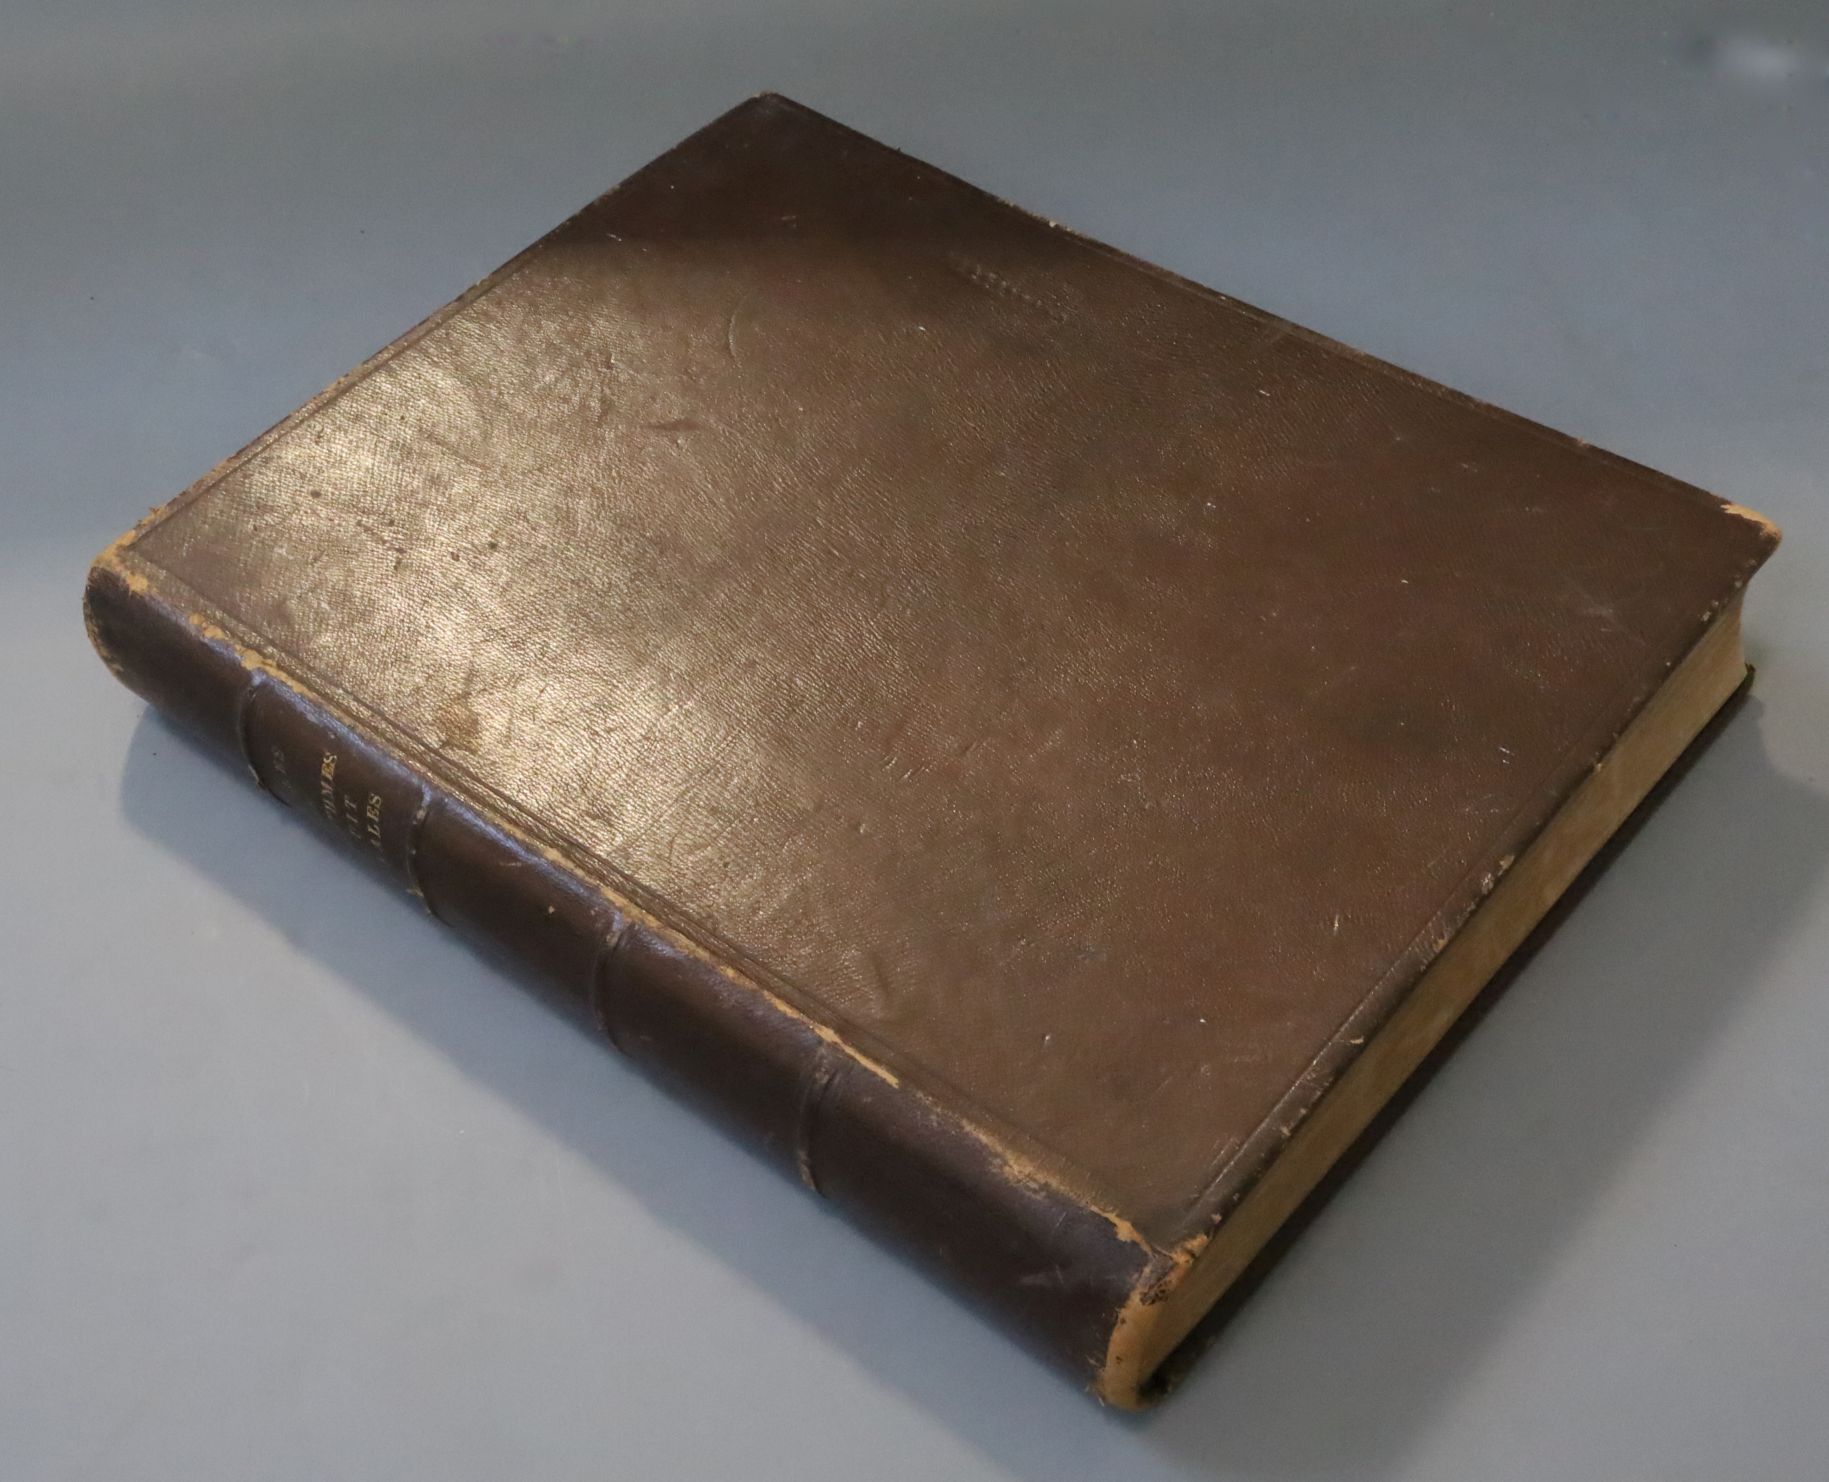 Géographique de L'Armée, Tables De Logarithmes, 1 vol, brown leather, Imprimerie Nationale, Paris - Image 2 of 2